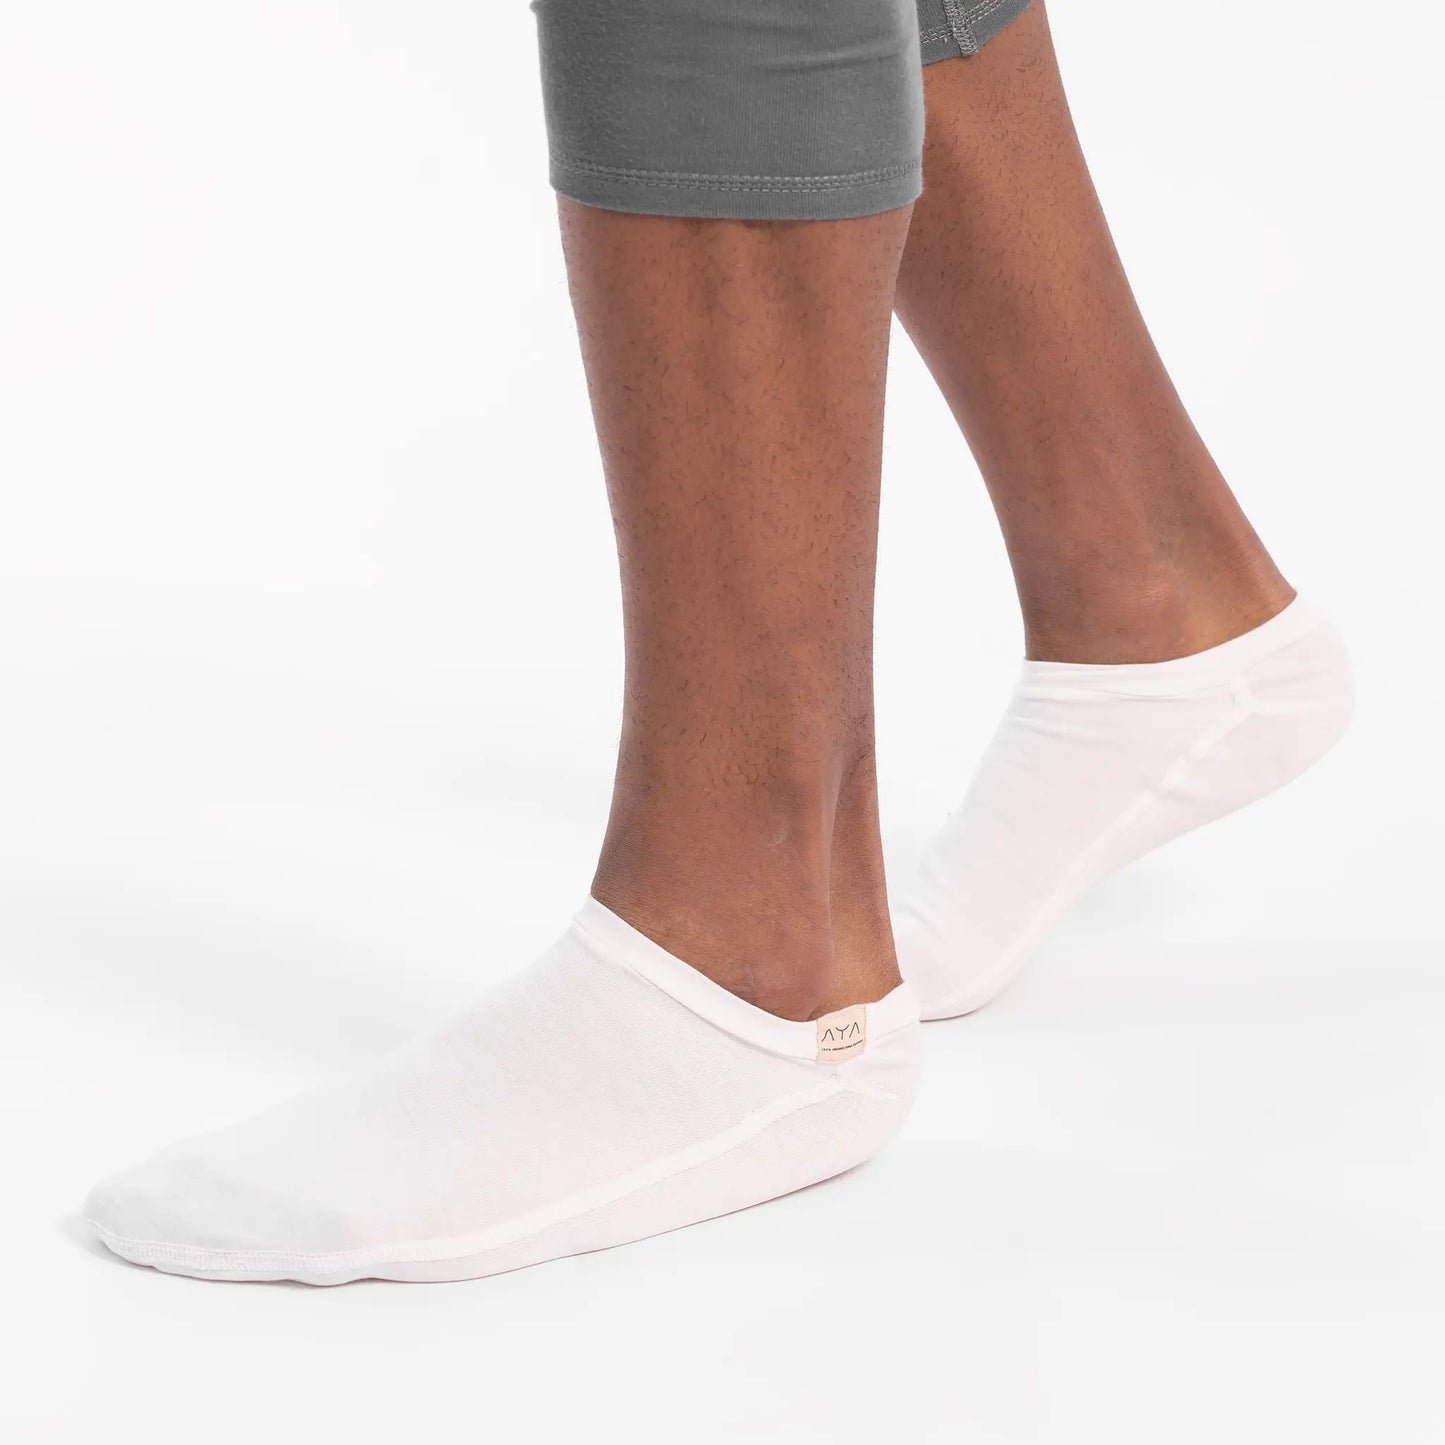 unisex slipper socks single origin color white